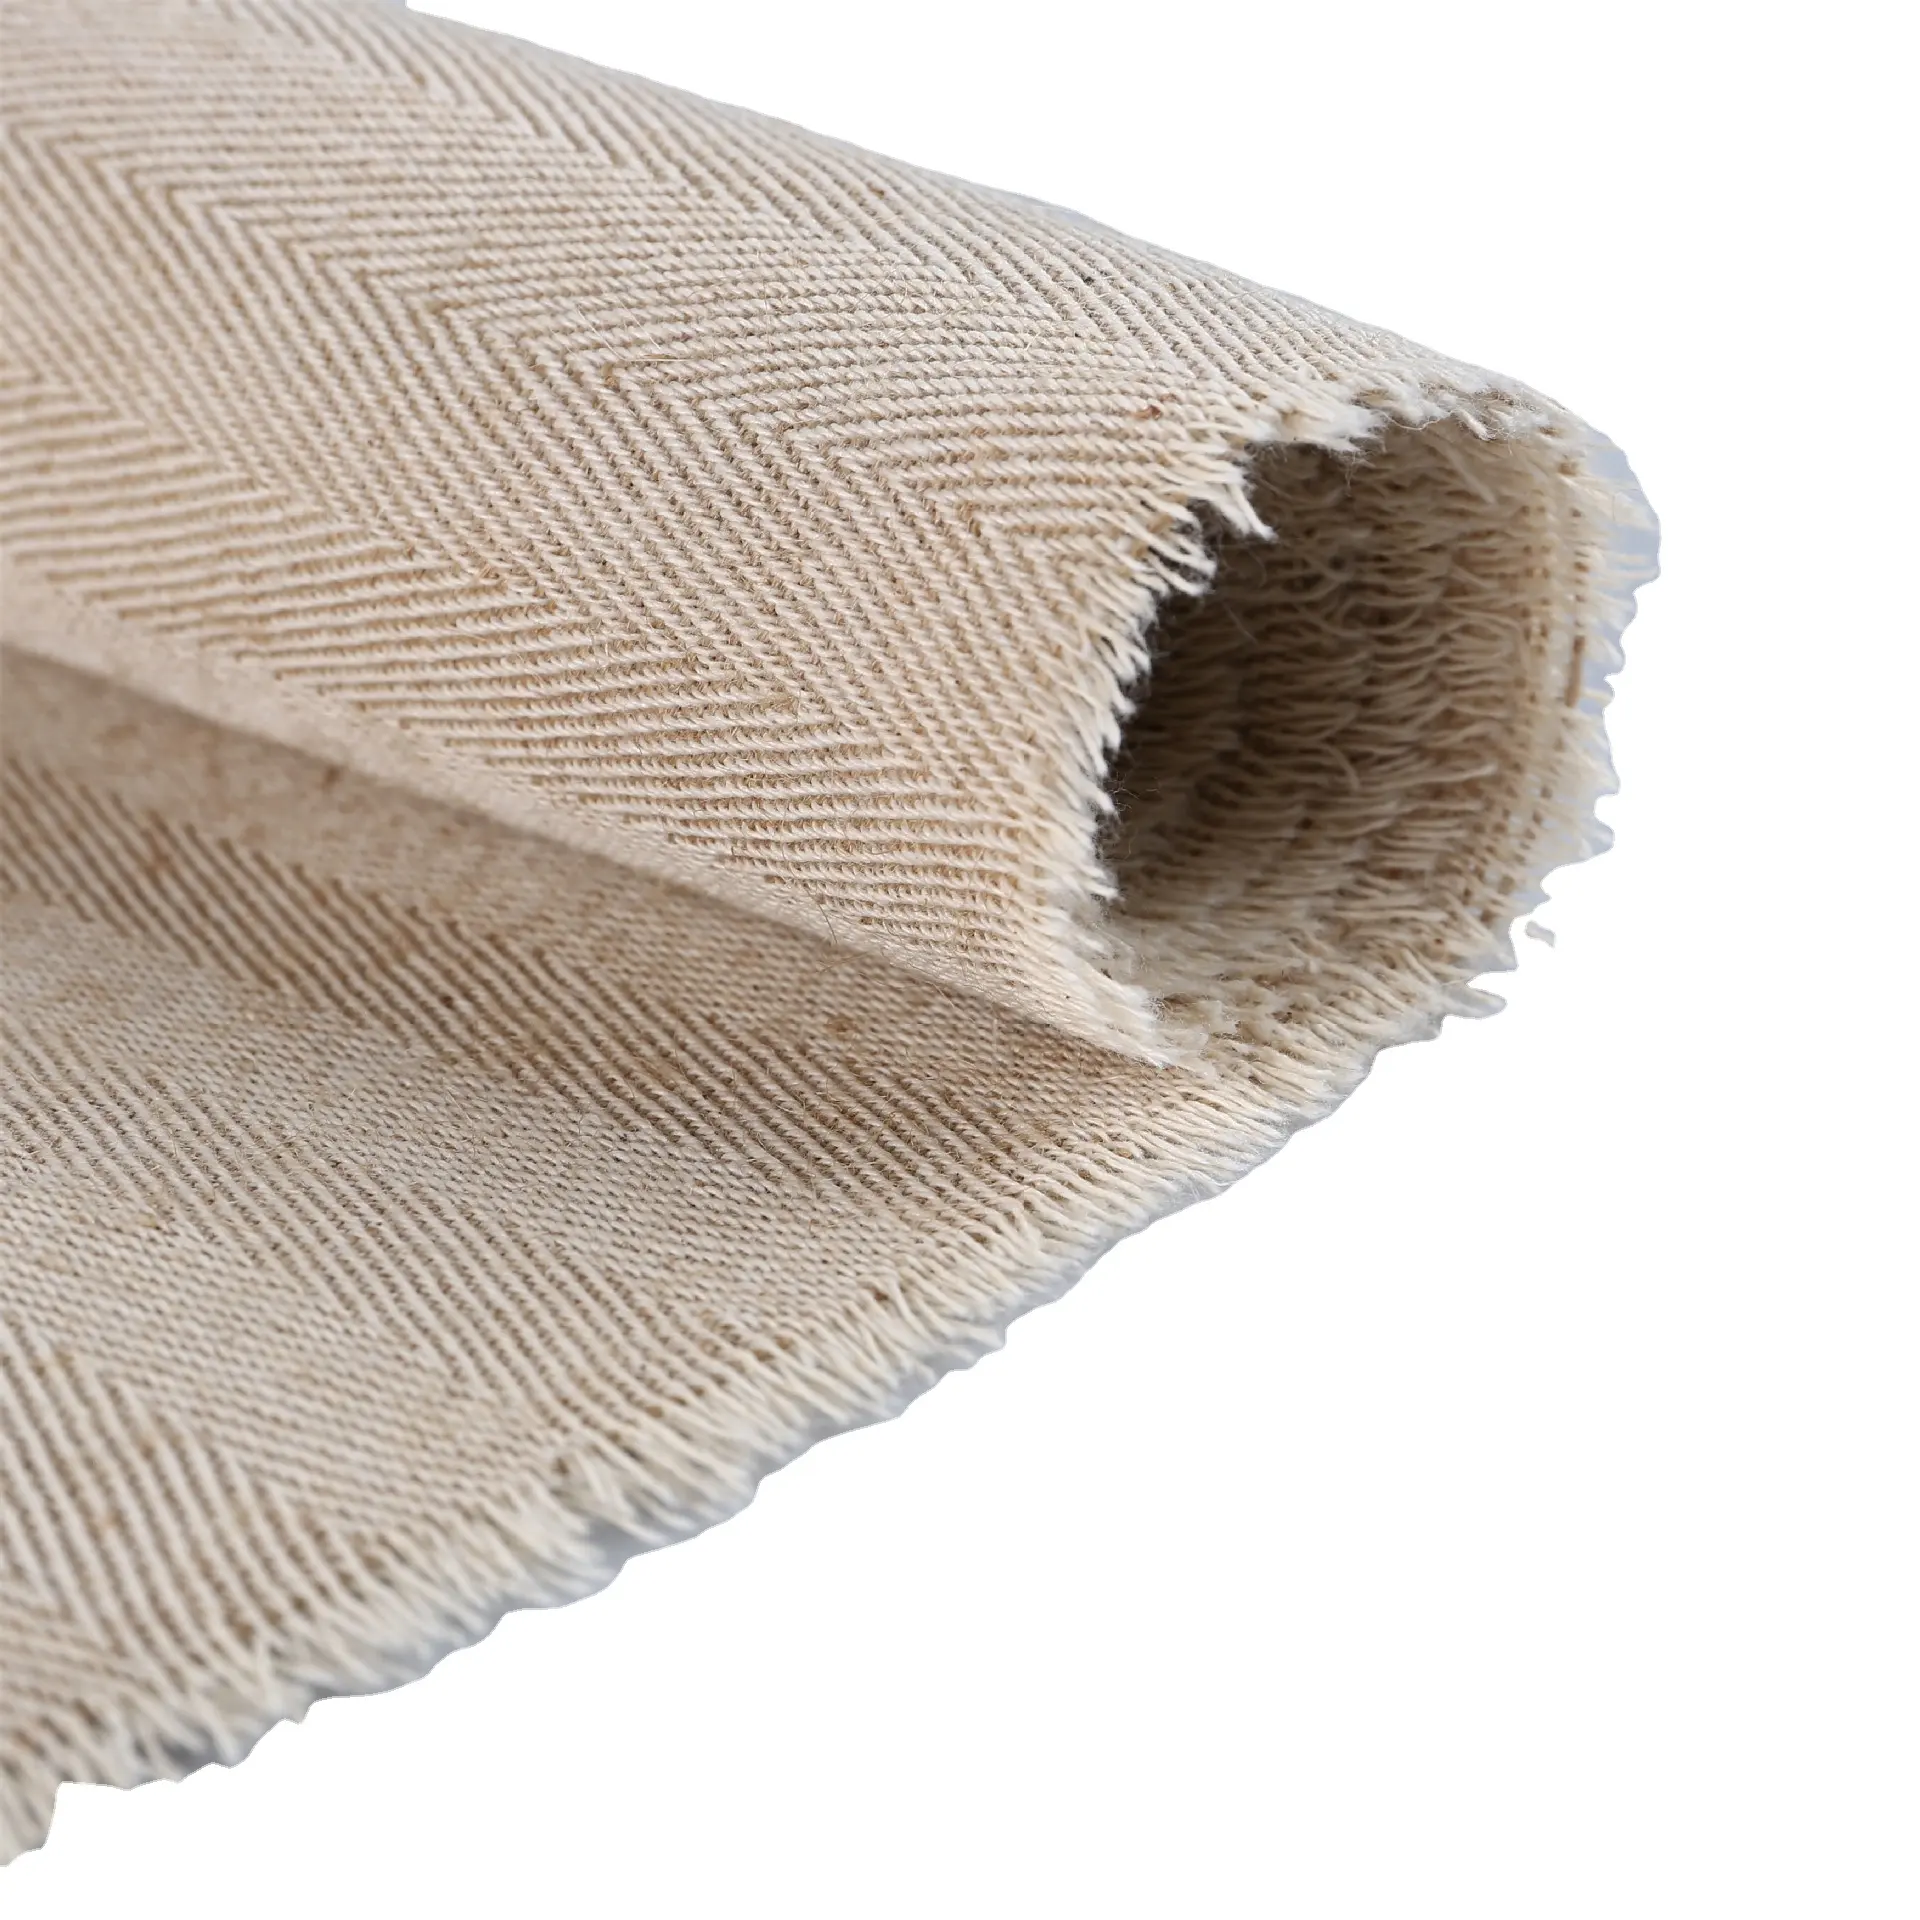 Tela de yute de algodón con doble cara, tejido de doble cara con diseño de espiga, Jacquard, arpillera, algodón, cáñamo orgánico